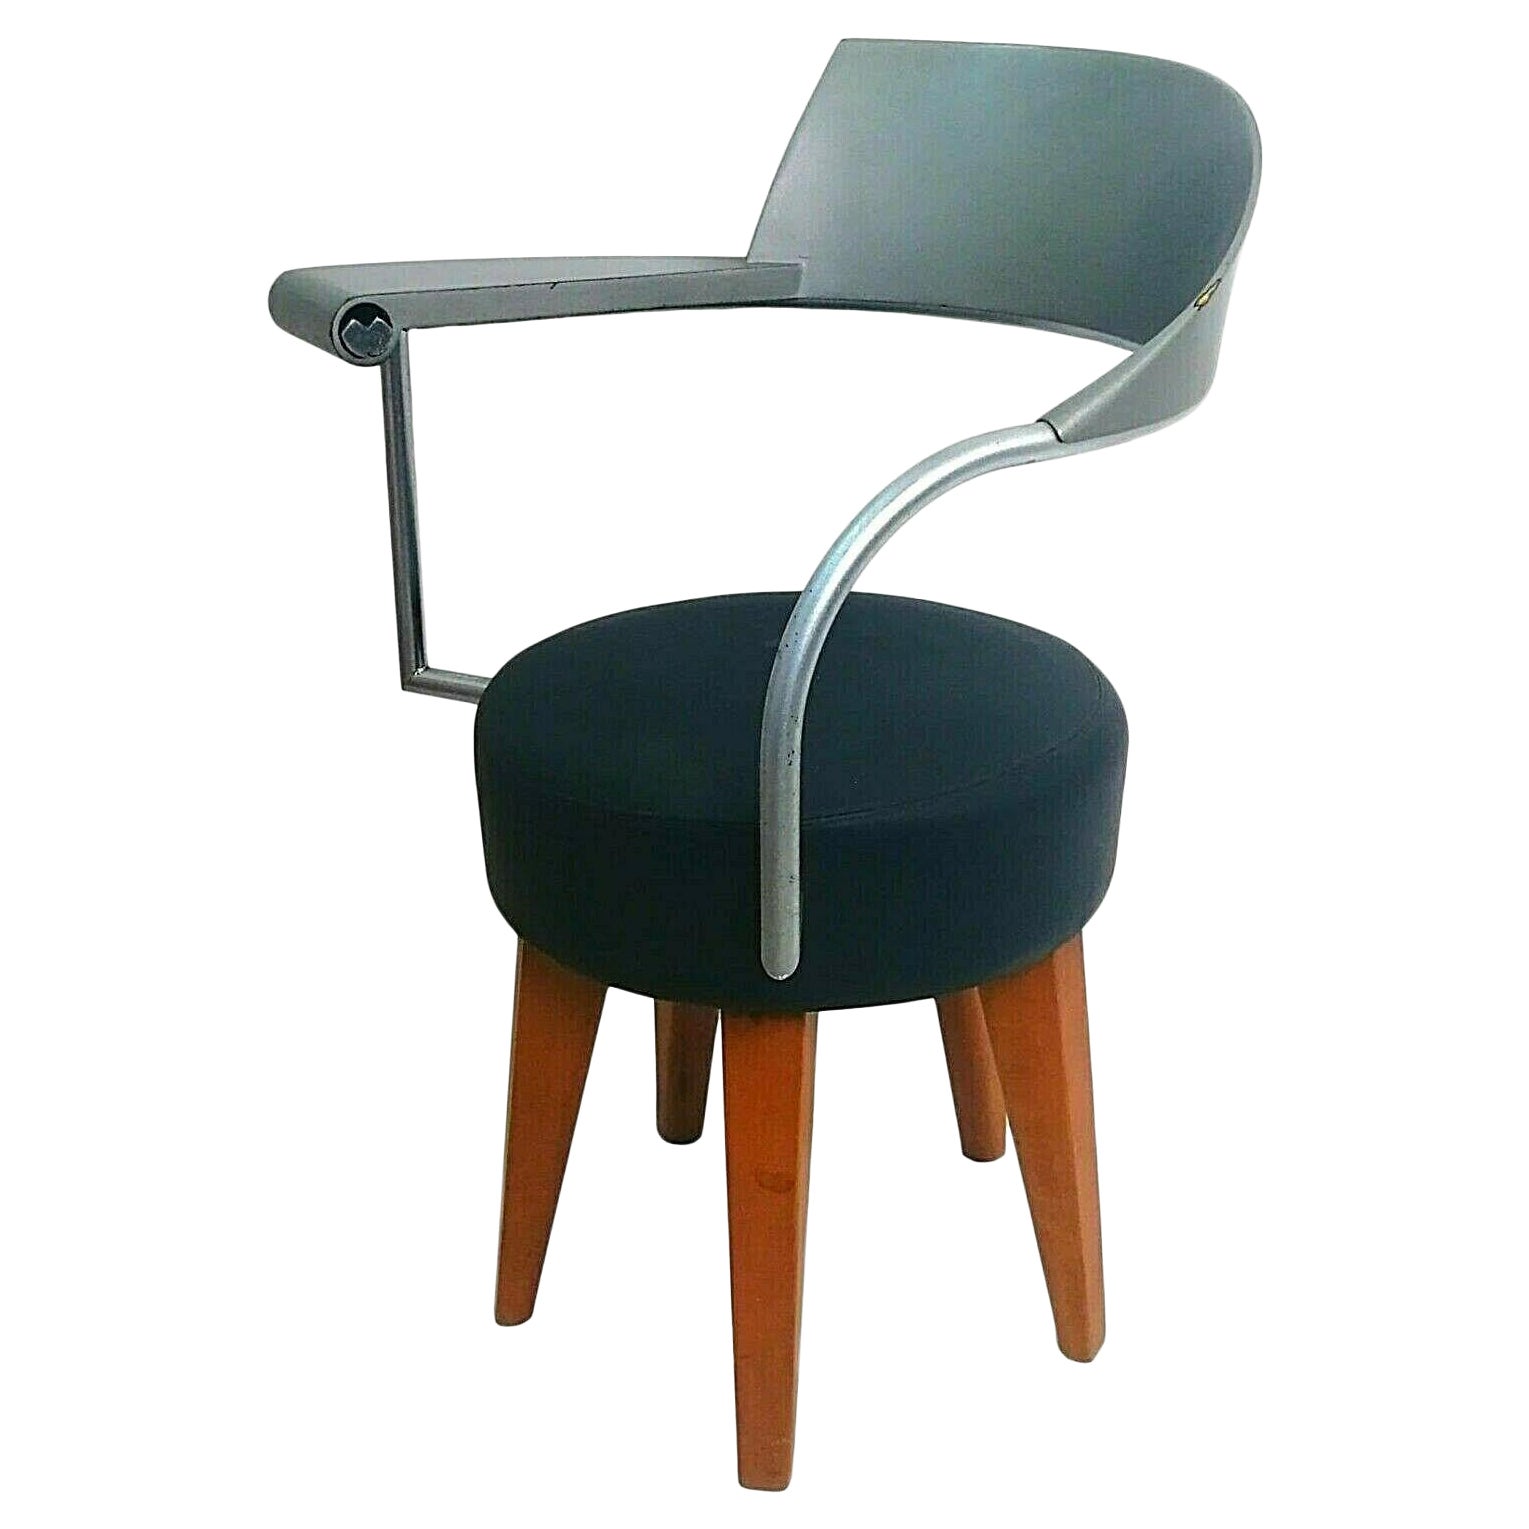 Sessel ""Techno"" Design Philippe Starck für L'Oreal von Maletti, 1980er Jahre